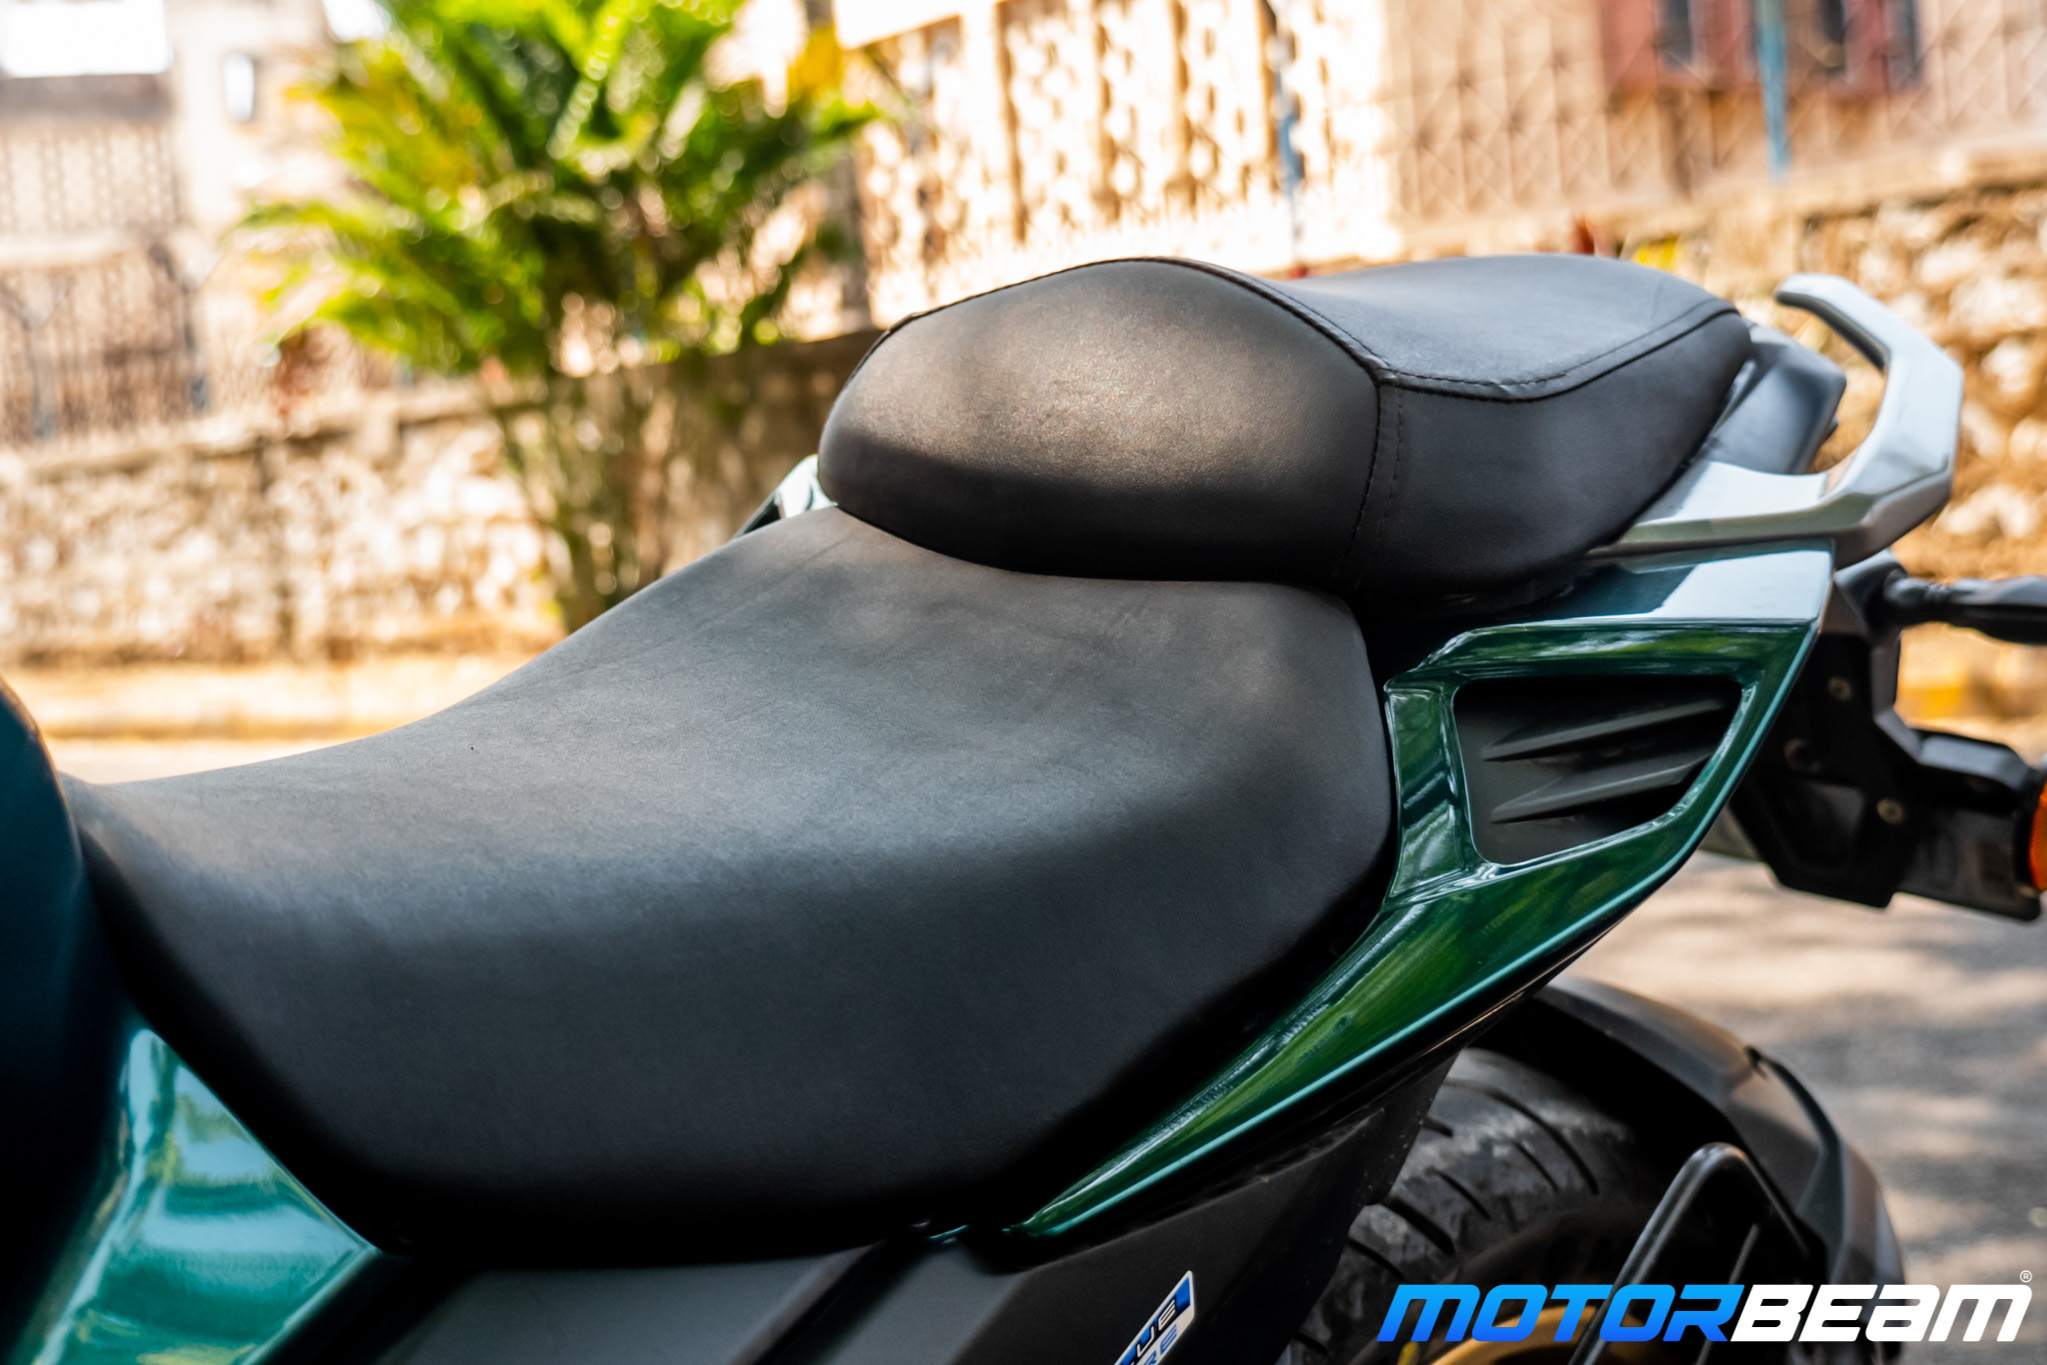 2021 Yamaha FZS 25 Review 1